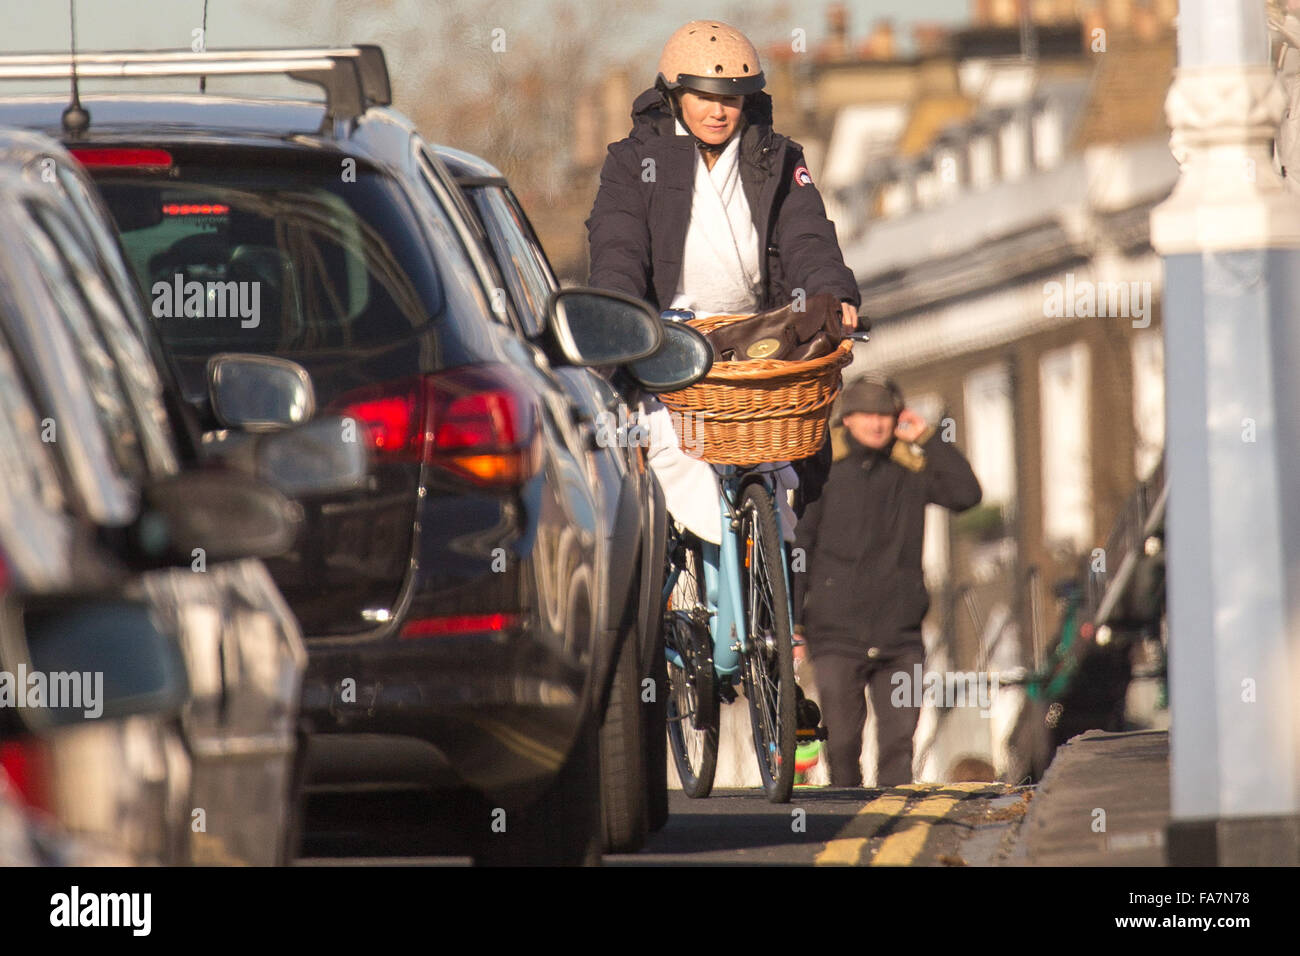 Renee Zellweger provoca il caos del traffico da cavalcare in veicoli che sopraggiungono in senso contrario su una bici nella sua vestaglia su Albert Bridge! Dotato di: Renee Zellweger dove: Londra, Regno Unito quando: 22 Nov 2015 Foto Stock